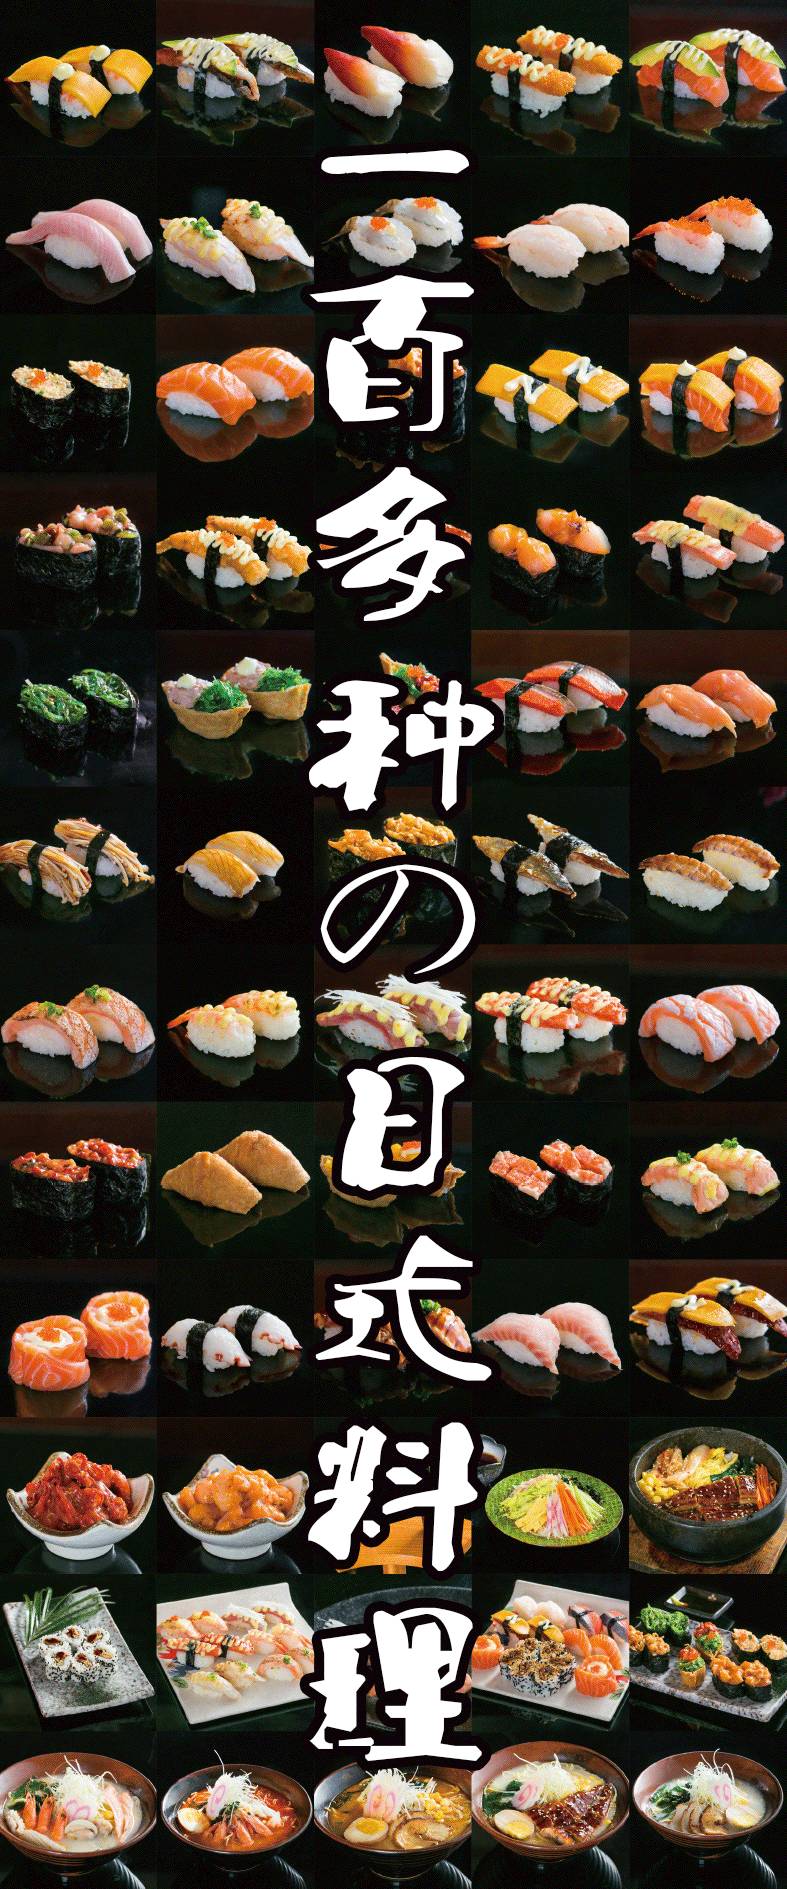 品种多且质量高啦但系,估计全虎门就系呢间店可以做到寿司的种类好多